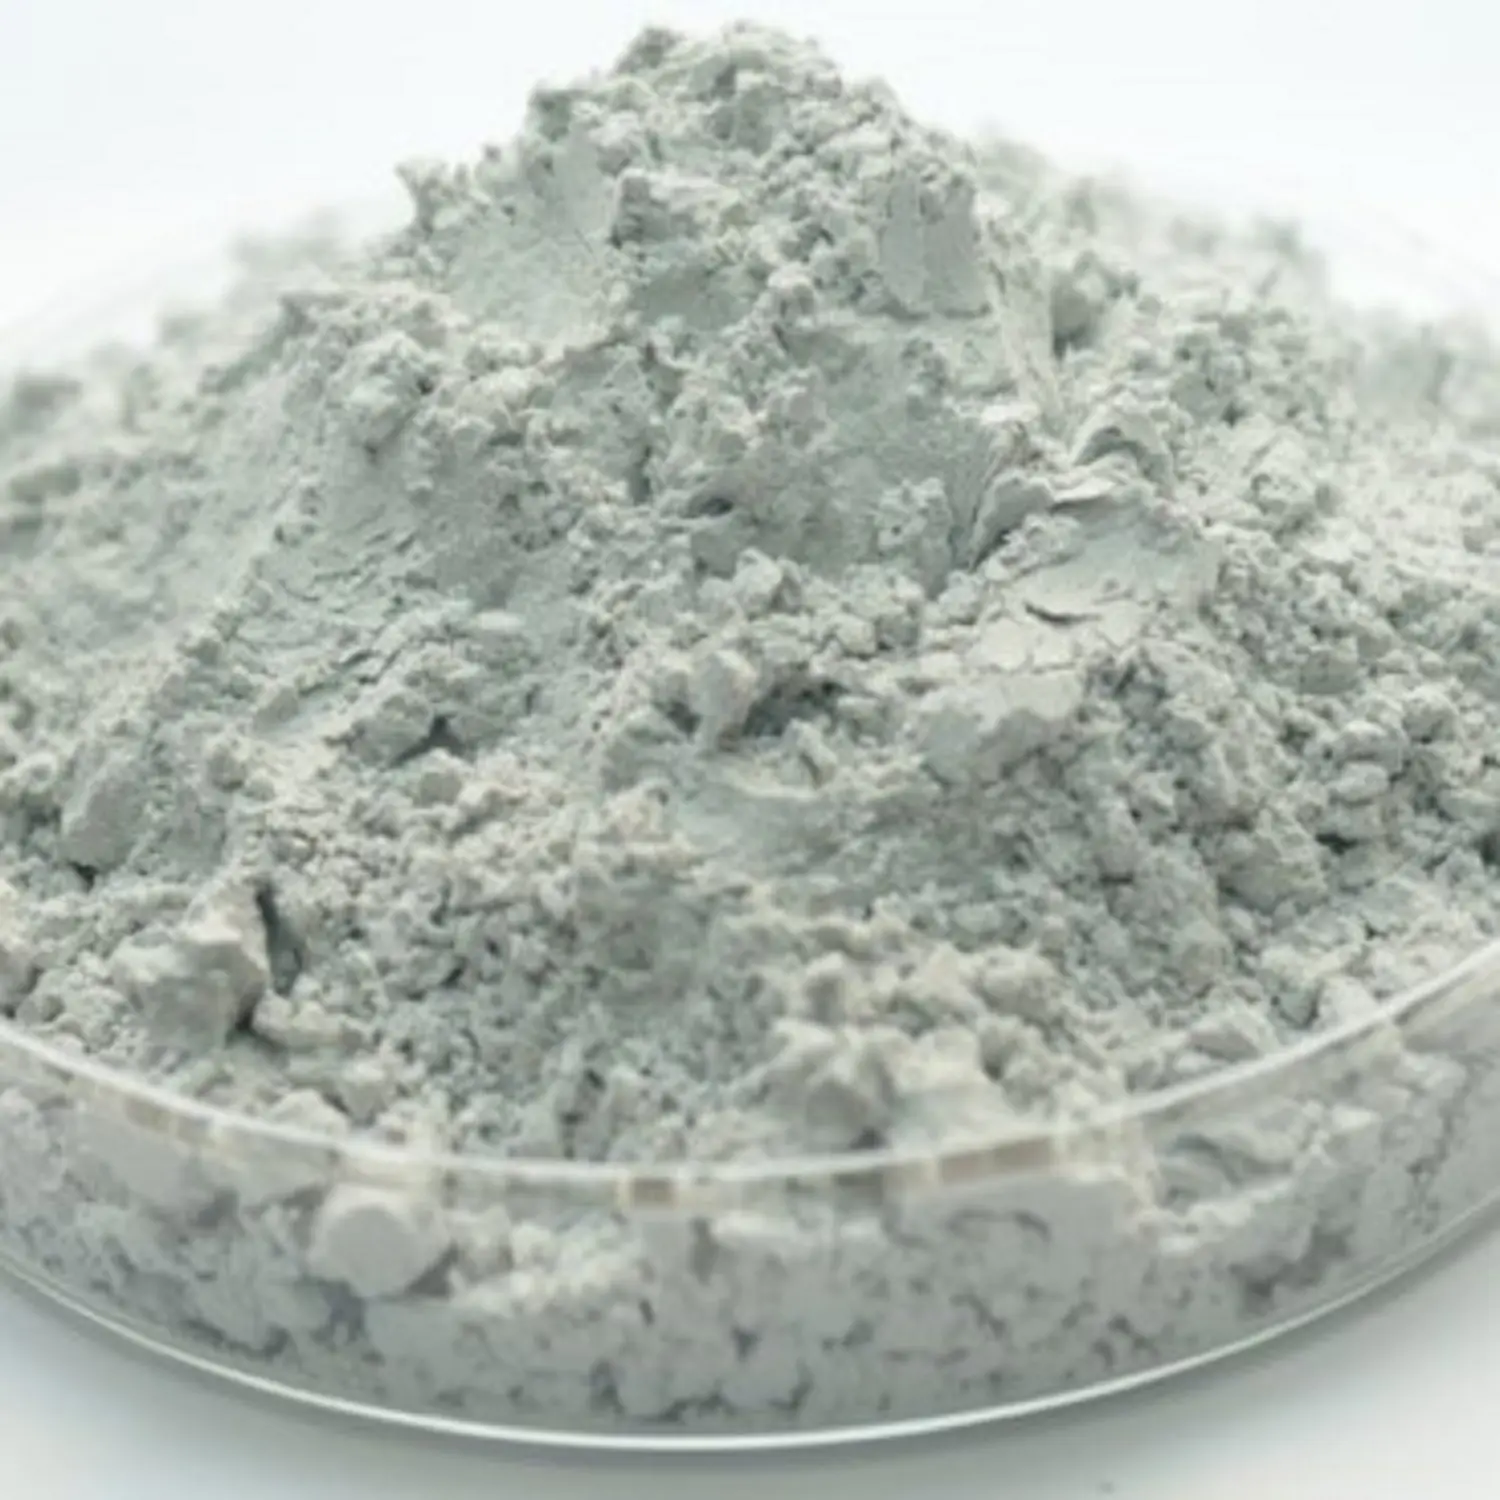 Top vente Ciment Portland CEM II 32.5R / CEM I- 42.5, Ciment Portland ordinaire de haute qualité Vente chaude Ciment Portland CEM II 32.5R